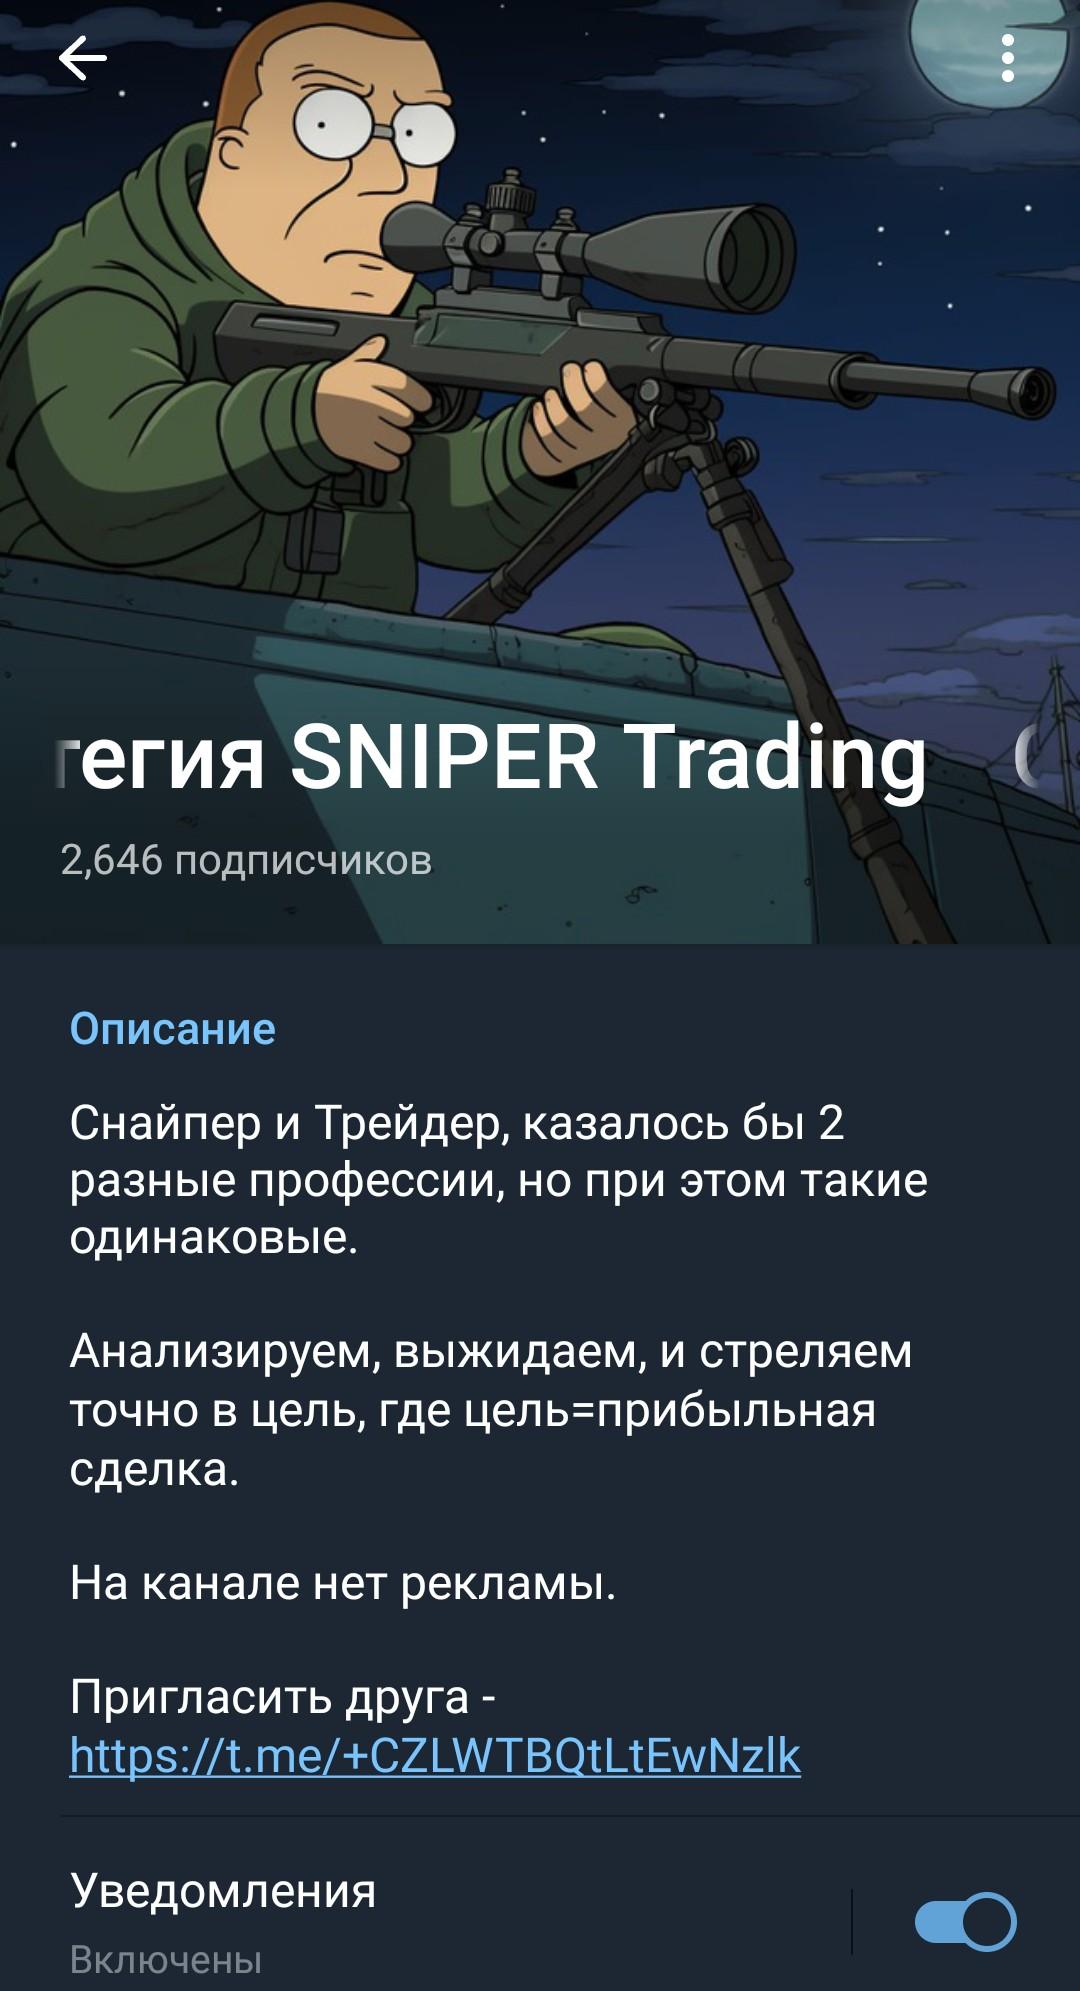 Trading SNIPER - телеграм